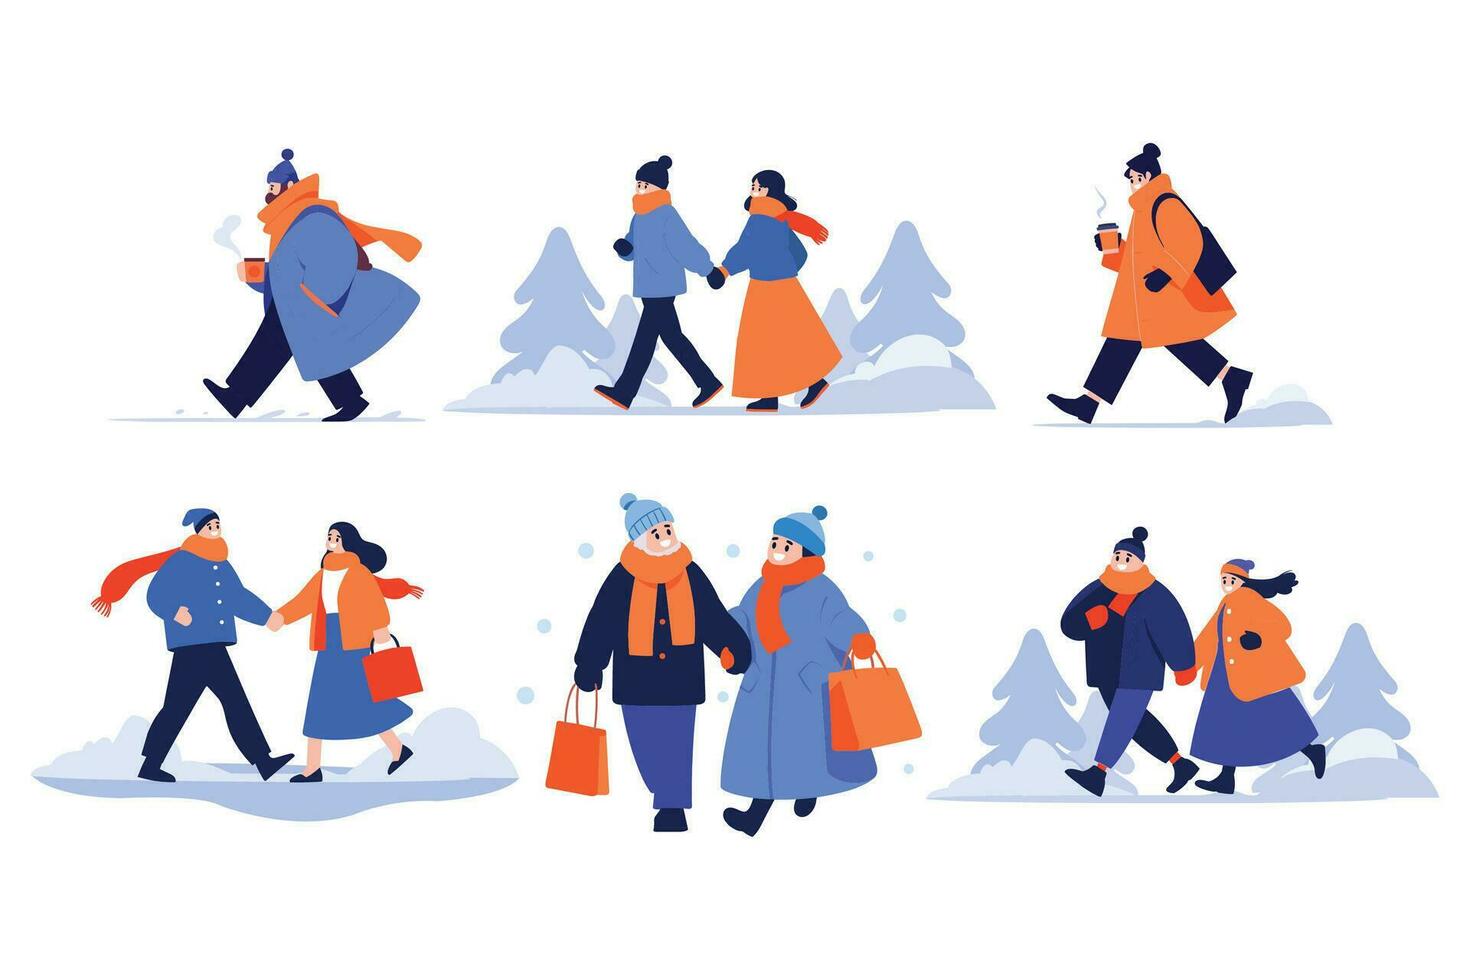 hand dragen par bär vinter- Kläder promenader på en väg fylld med snö i platt stil vektor